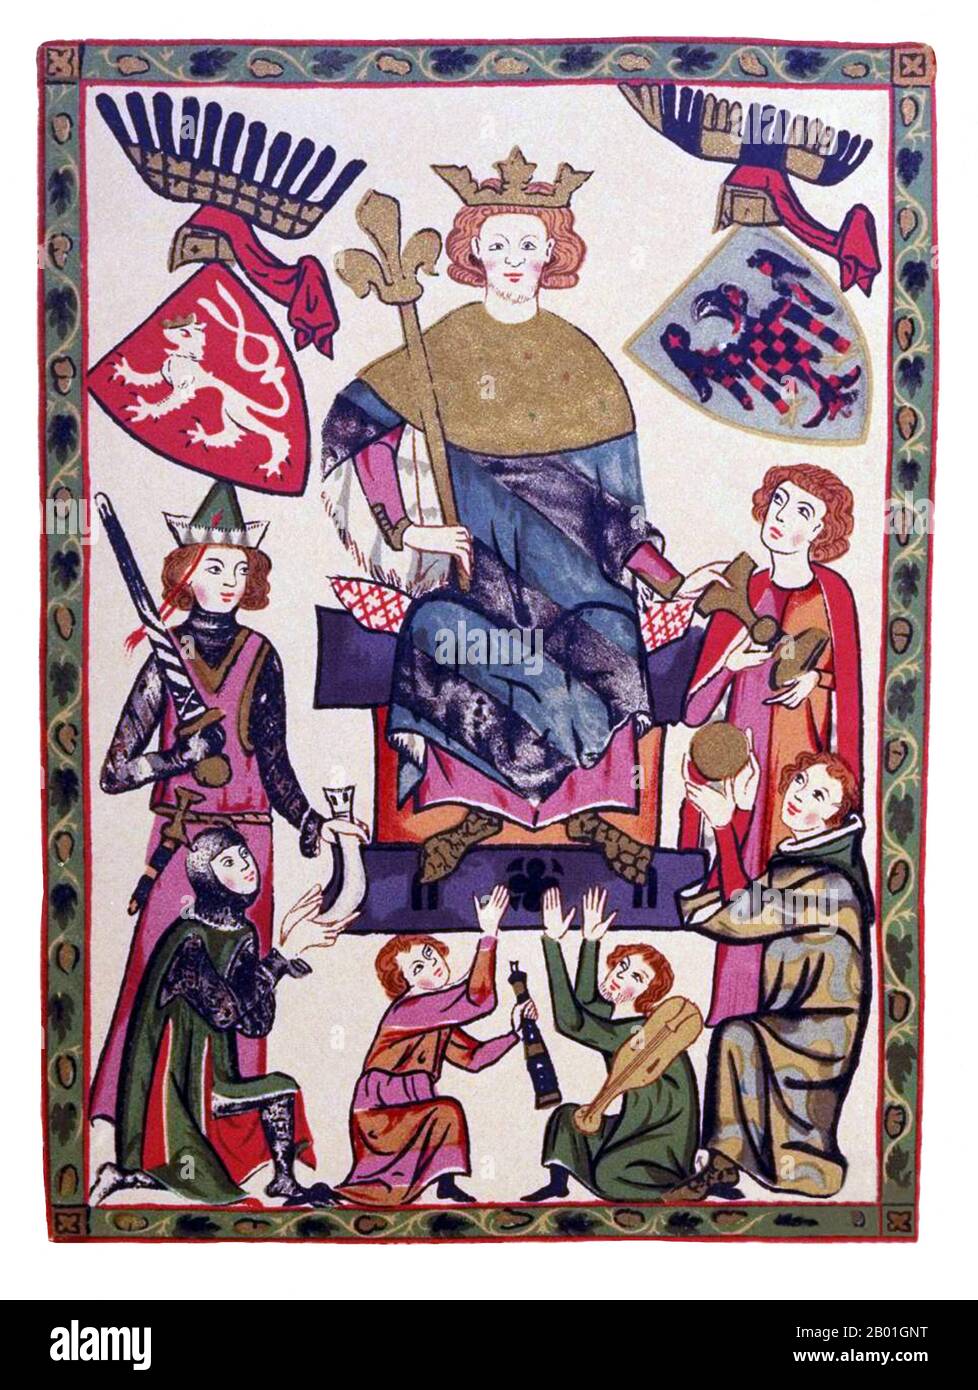 République tchèque/Suisse: 'Good King Venceslas'. Peinture miniature du Codex Manesse, c. 1304-1340. Venceslaus II/Vaclav II de Bohême (27 septembre 1271 - 21 juin 1305), était le roi de Bohême (1278-1305) et de Pologne (1300-1305), et le duc de Cracovie (1291-1305). Fils unique du roi Ottokar II et membre de la dynastie Přemyslid, il est marié à Judith des Habsbourg, fille de Rudolf I, roi des Romains. Il revendique la couronne de Hongrie par son fils, Venceslaus III, mais il mourut avant de pouvoir la sécuriser entièrement. Il était considéré comme l'un des rois tchèques les plus importants. Banque D'Images